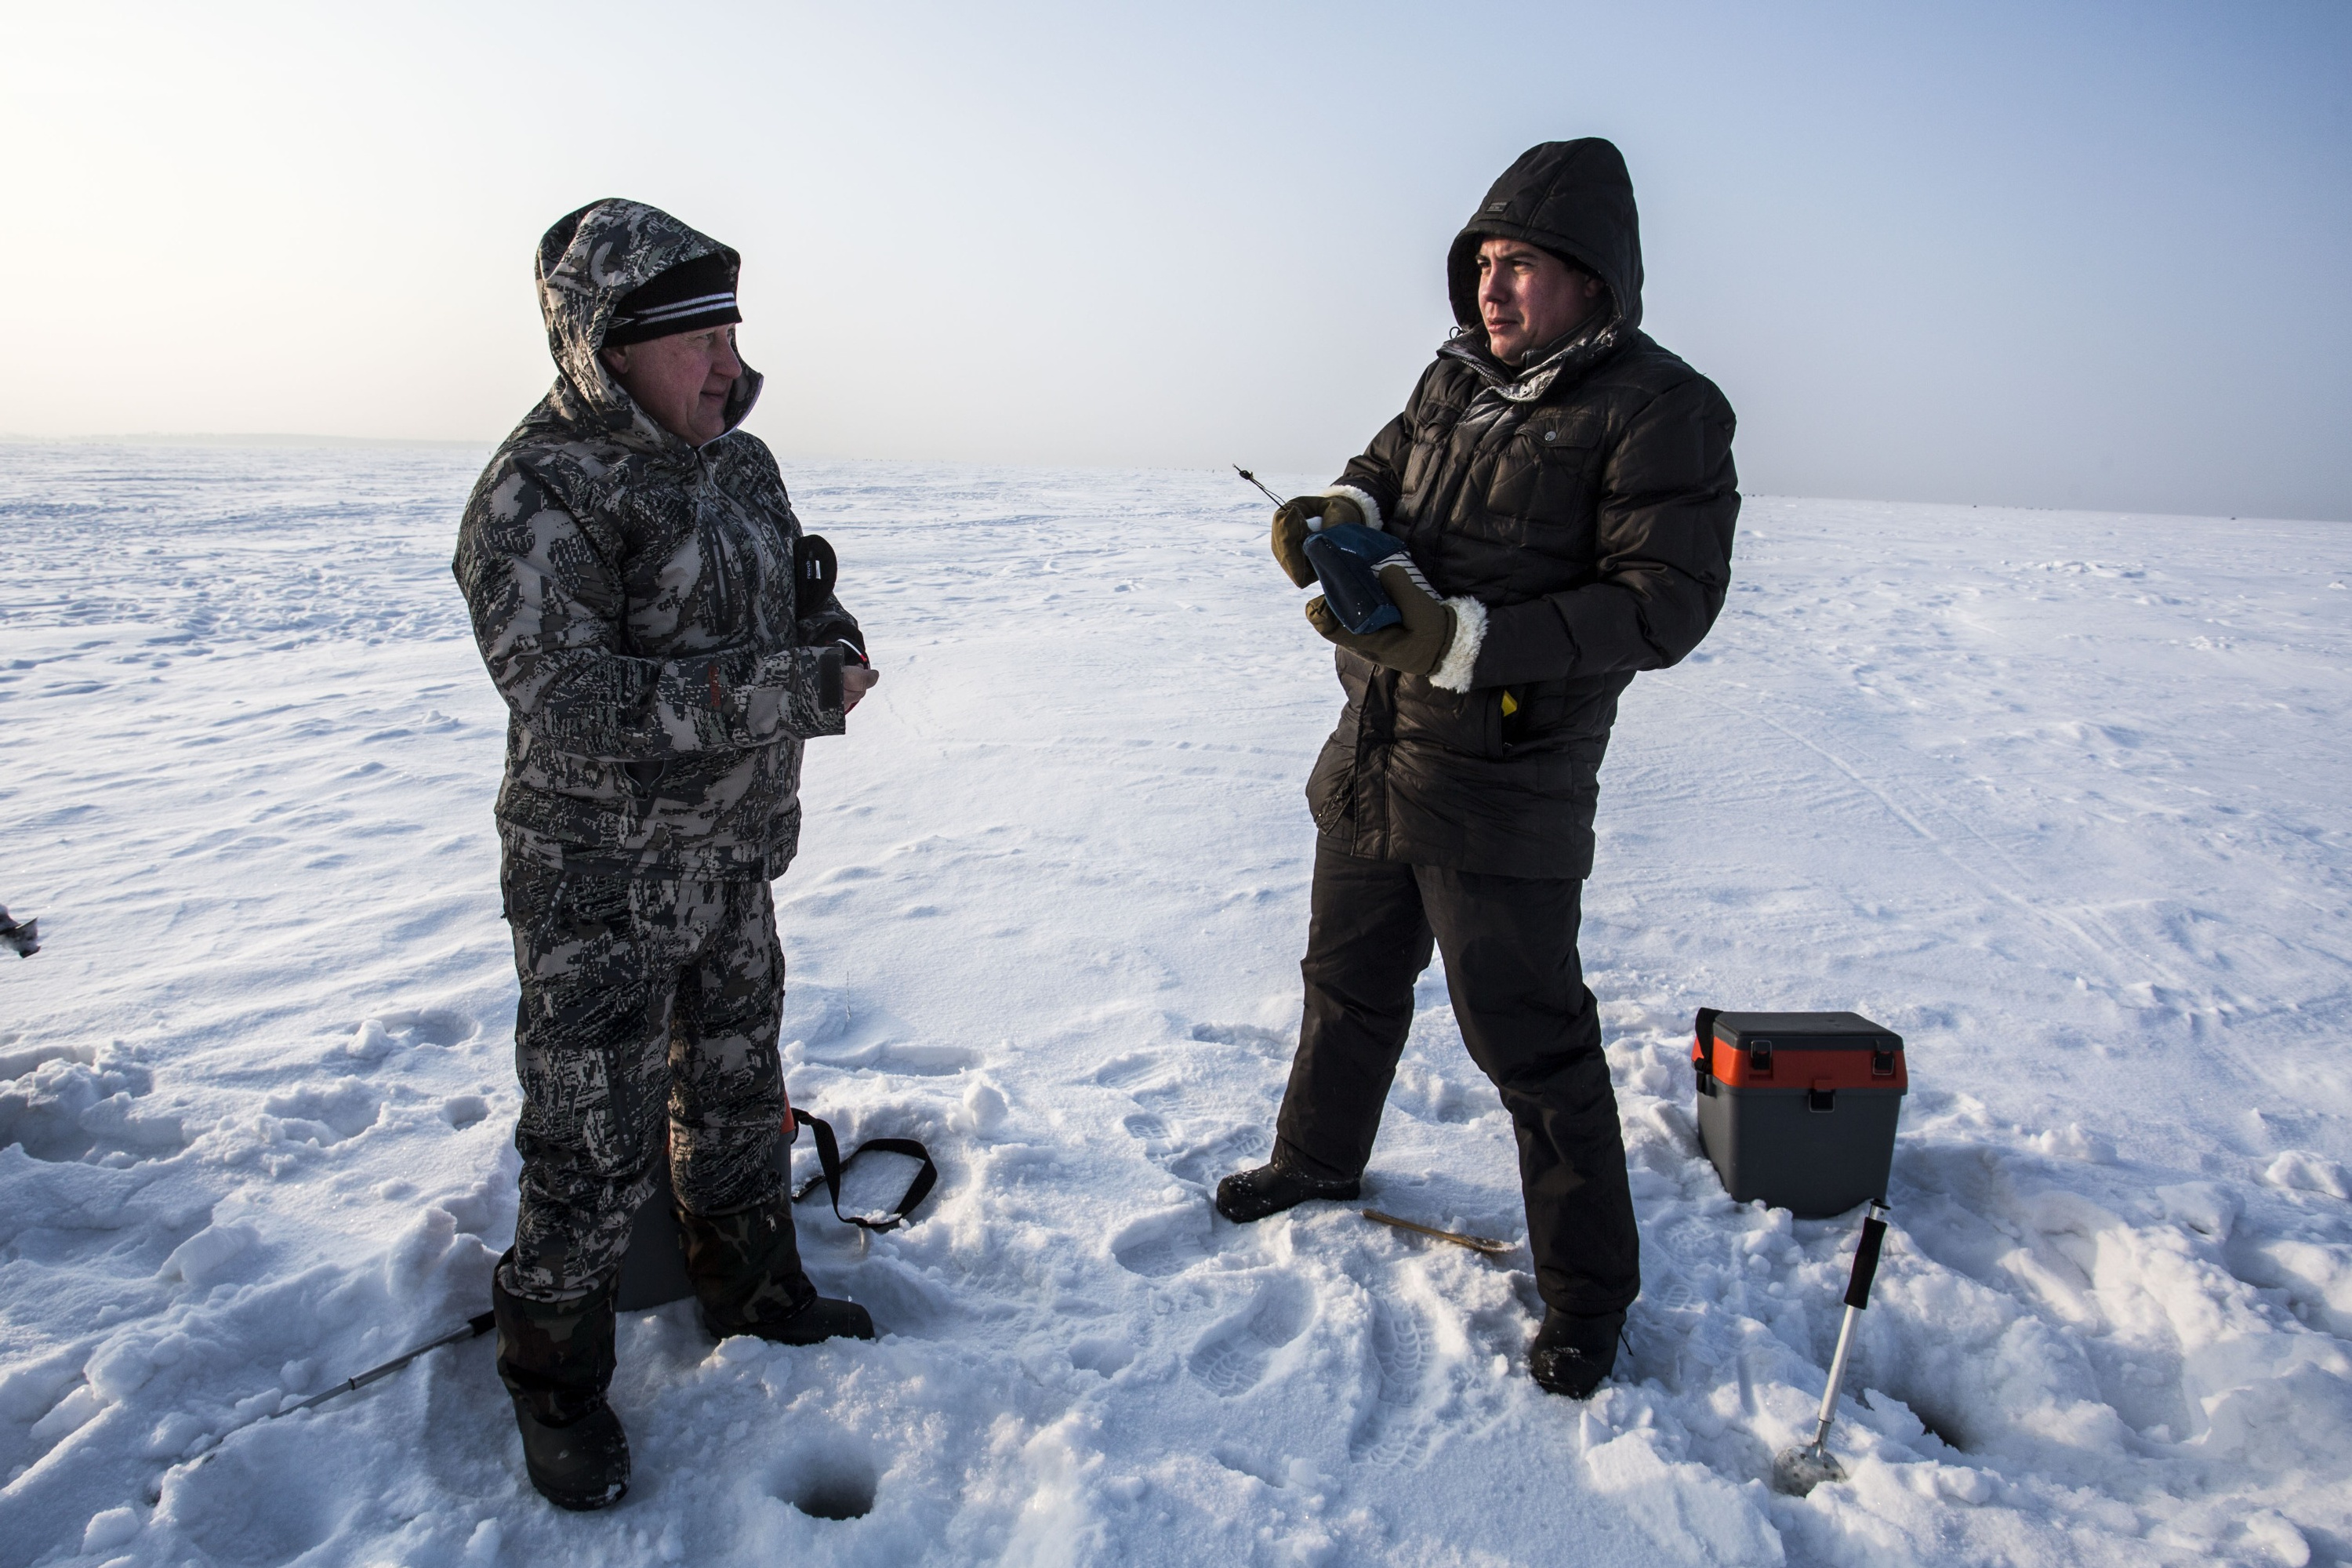 Рыбалка выдалась экстремальной — в день интервью в Новосибирске ударили последние крепкие морозы